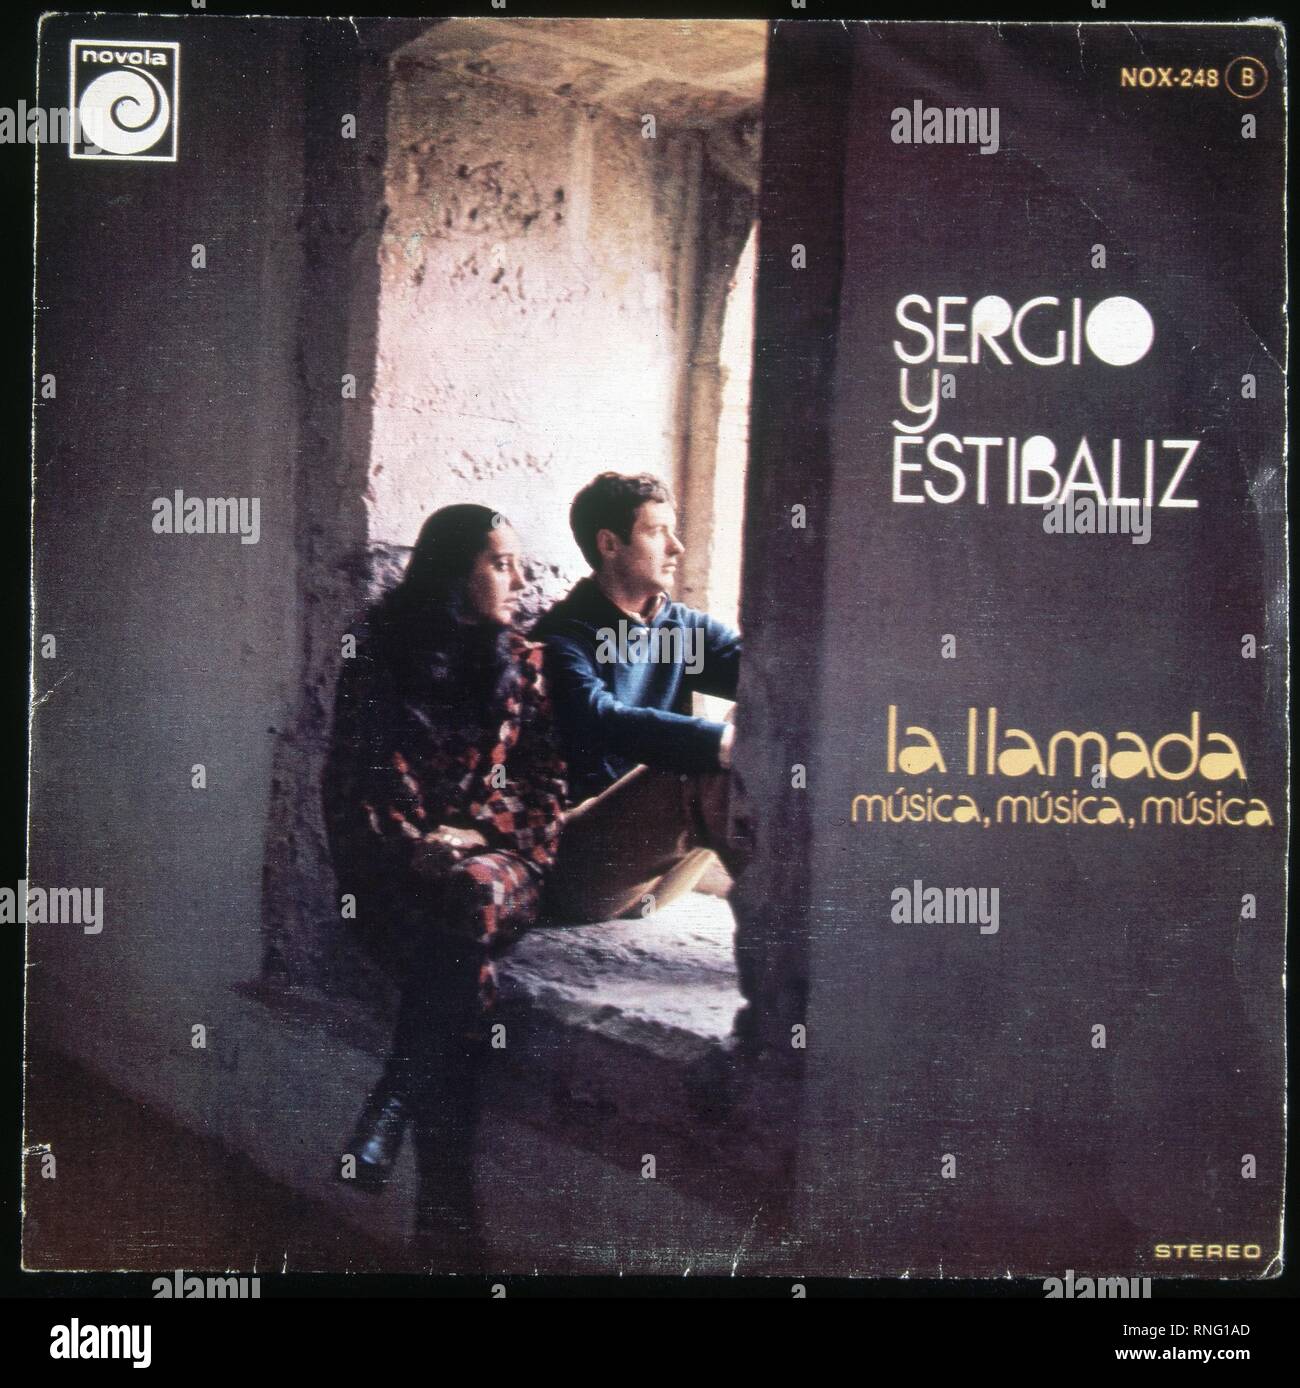 CARATULA DEL SINGOLO DE SERGIO Y ESTIBALIZ 'LA LLAMADA Musica Musica Musica'. Foto Stock